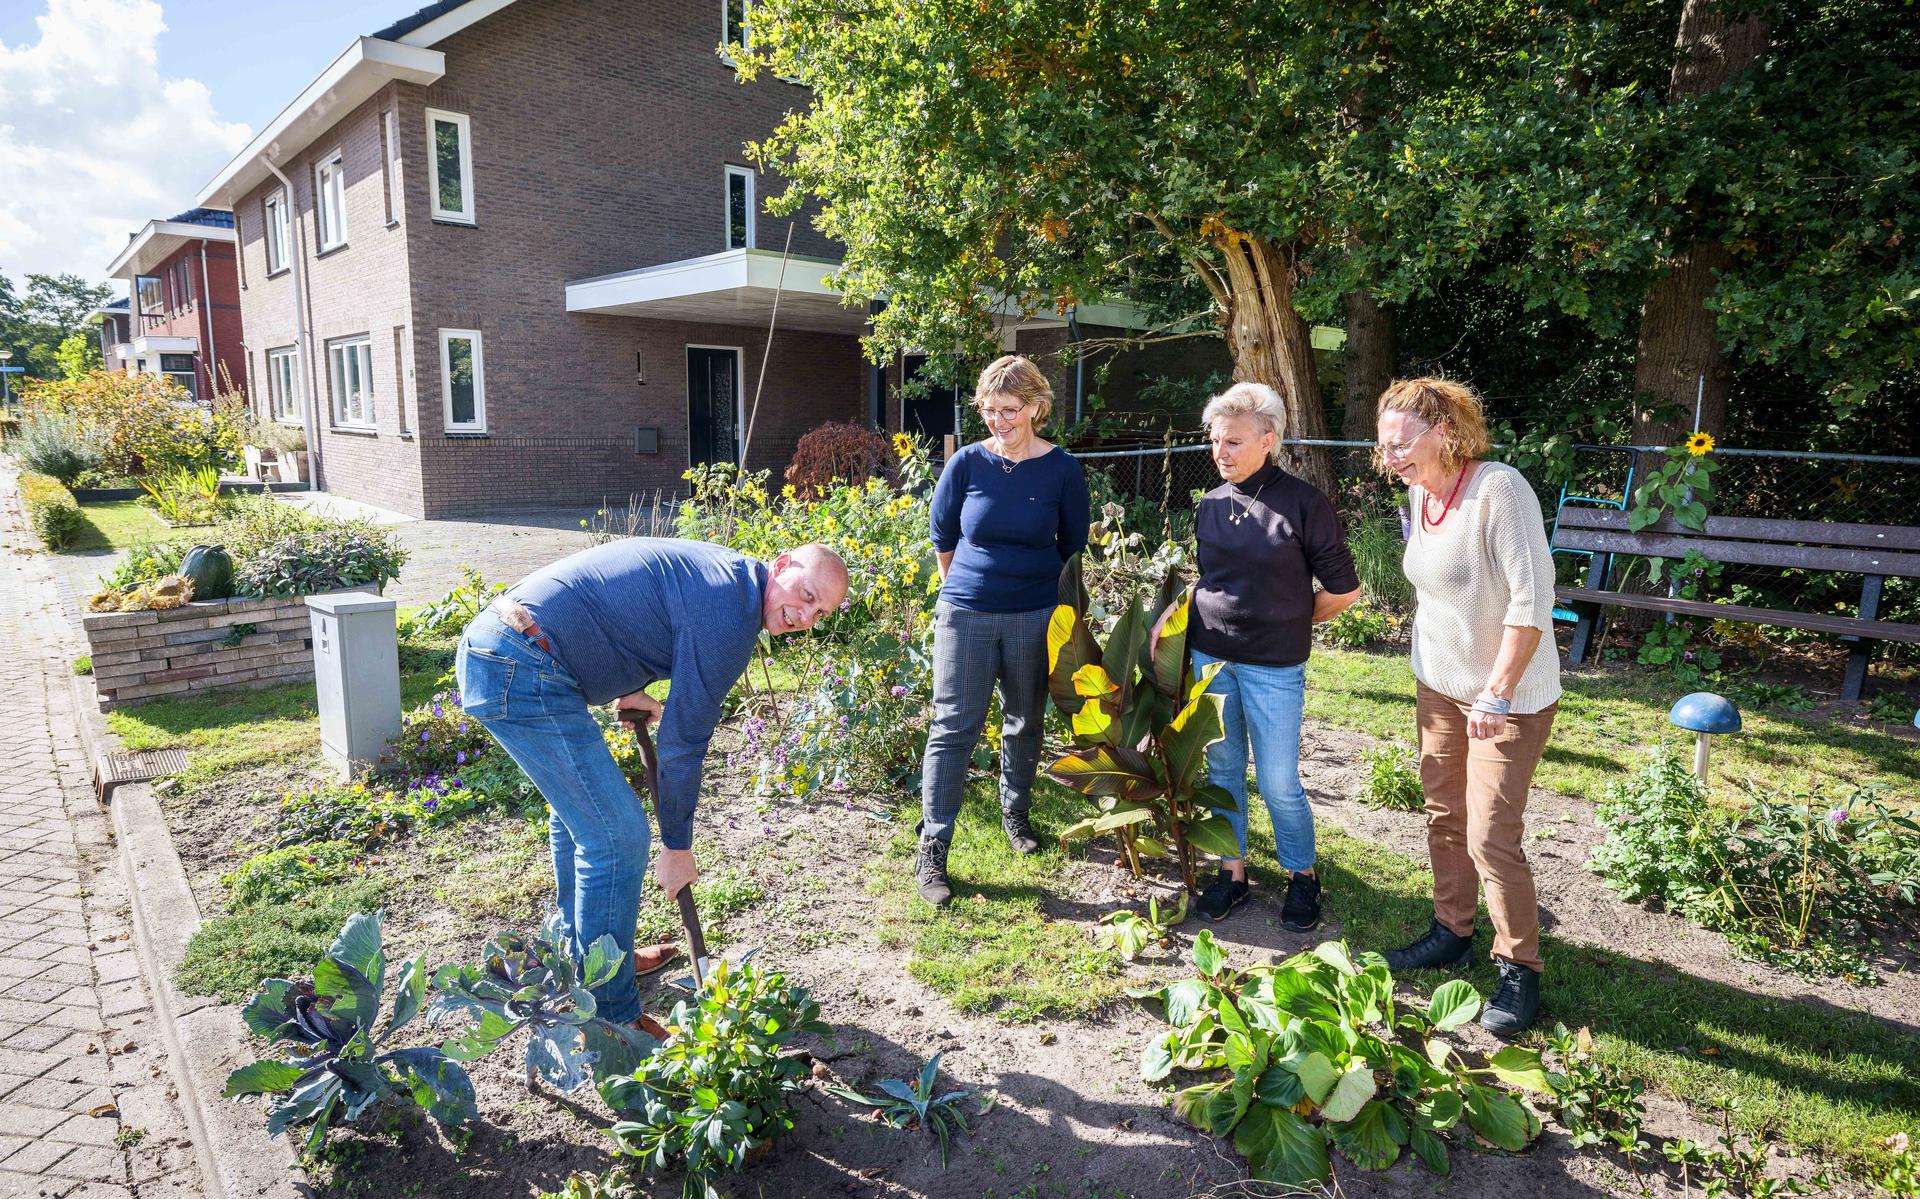 Samen de tuin te onderhouden zorgt voor contacten tussen de buurtbewoners.